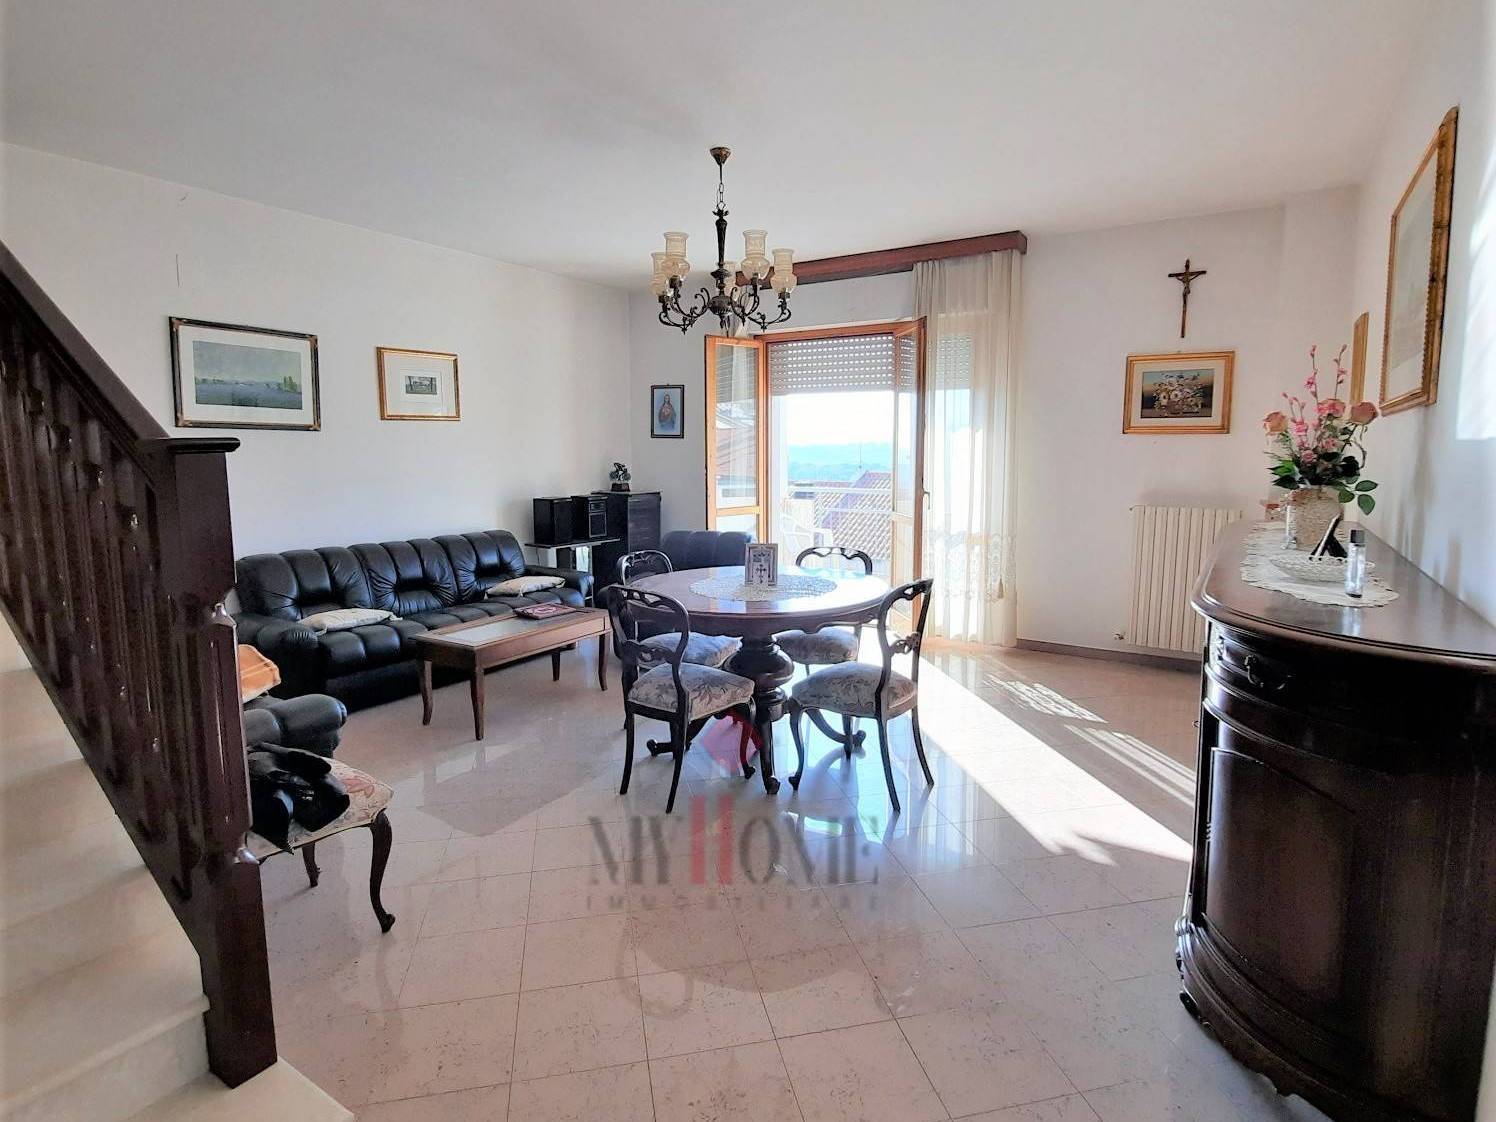 Villa a Schiera in vendita a Offida, 7 locali, prezzo € 190.000 | PortaleAgenzieImmobiliari.it